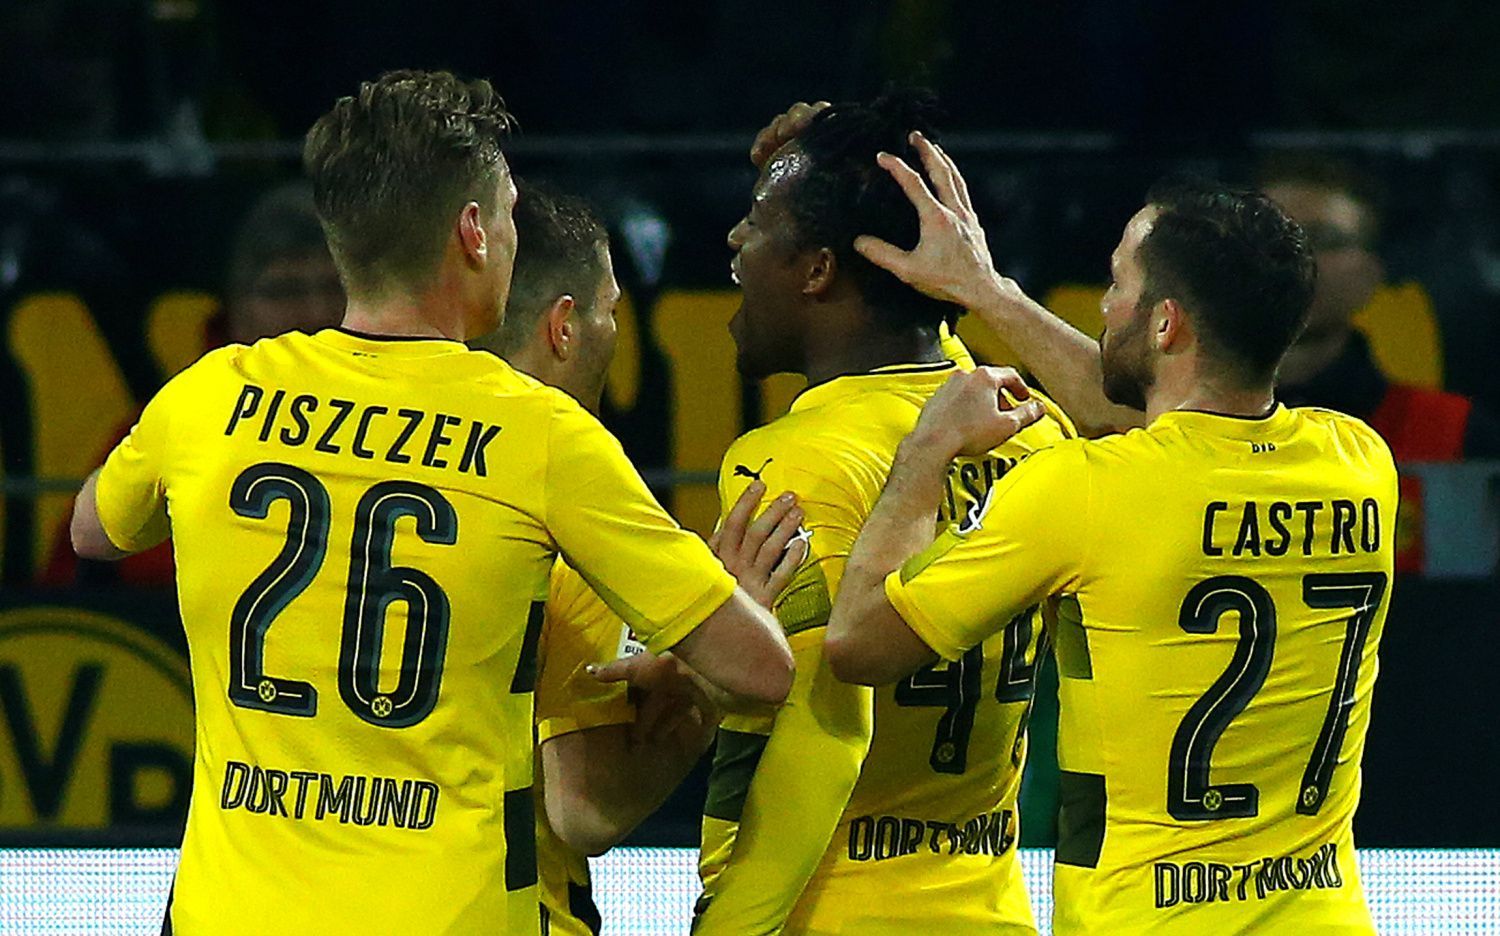 Radost fotbalistů Borussie Dortmund